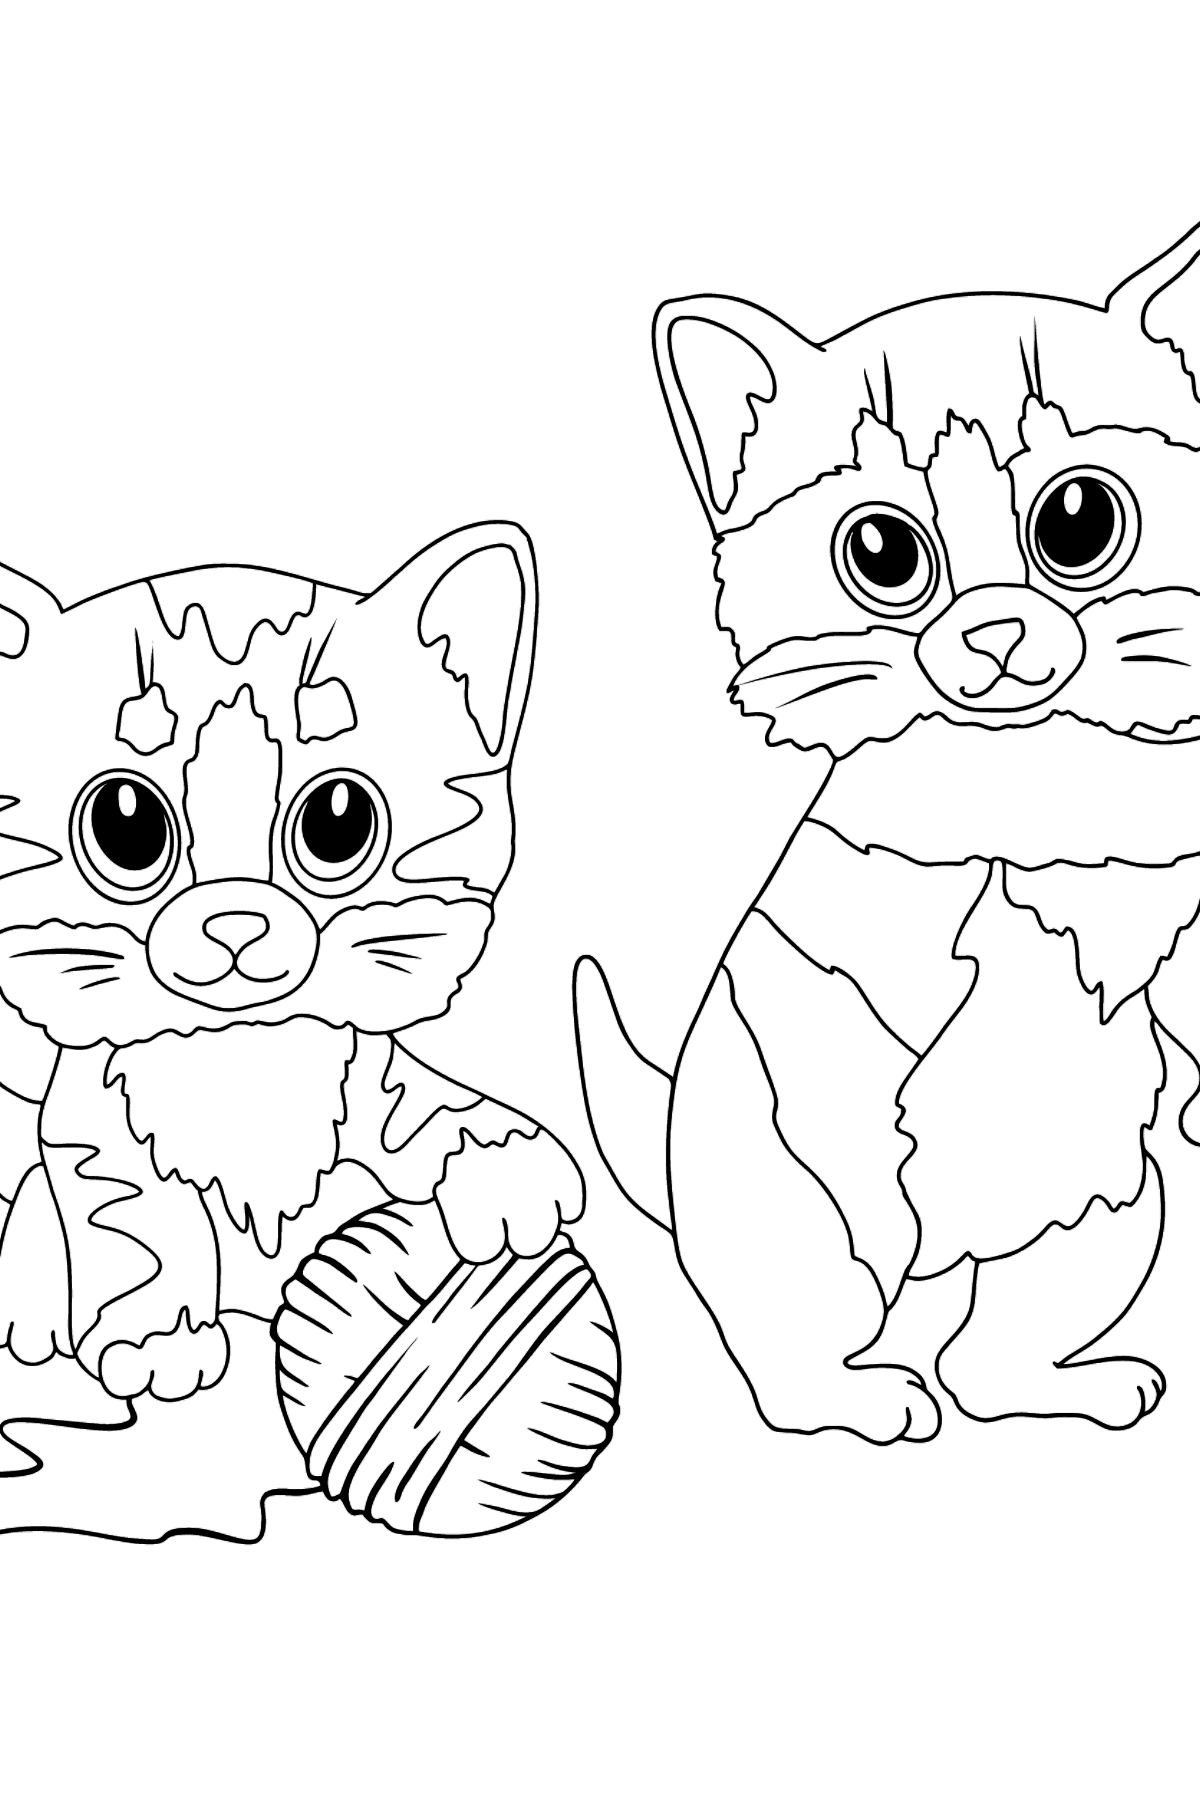 Tegning til fargelegging morsomme kattunger (vanskelig) - Tegninger til fargelegging for barn